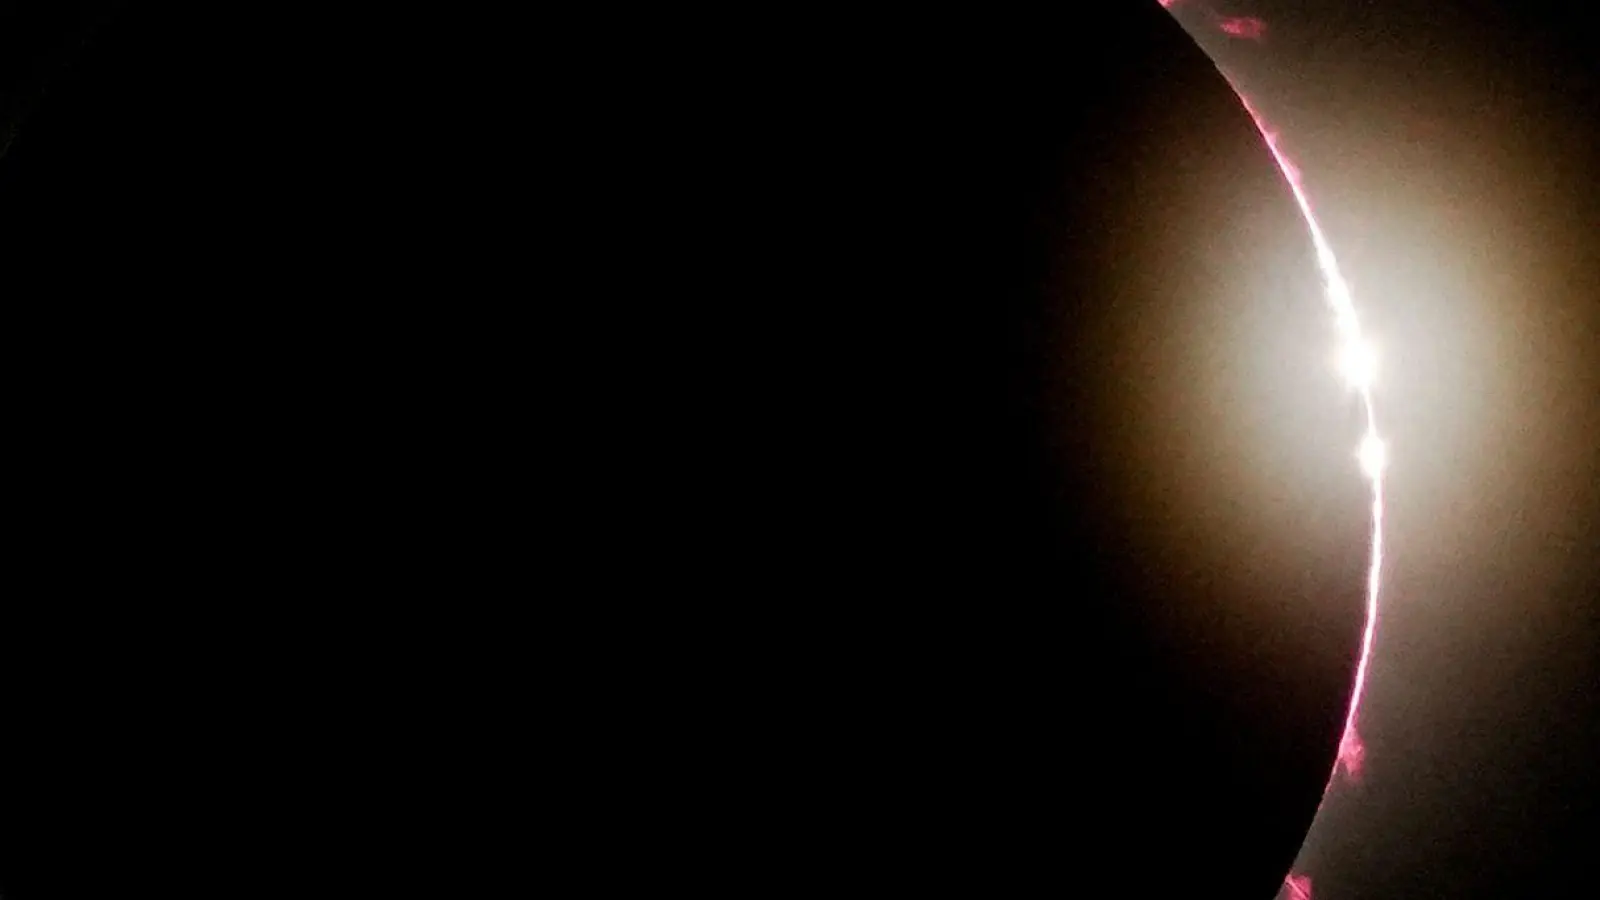 In Mexiko, den USA und Kanada konnten die Menschen eine totale Sonnenfinsternis erleben. Ein solches Himmelsspektakel kommt vor, wenn der Mond zwischen der Sonne und der Erde durchzieht und dabei die Sonne komplett verdeckt. (Foto: Fernando Llano/AP)